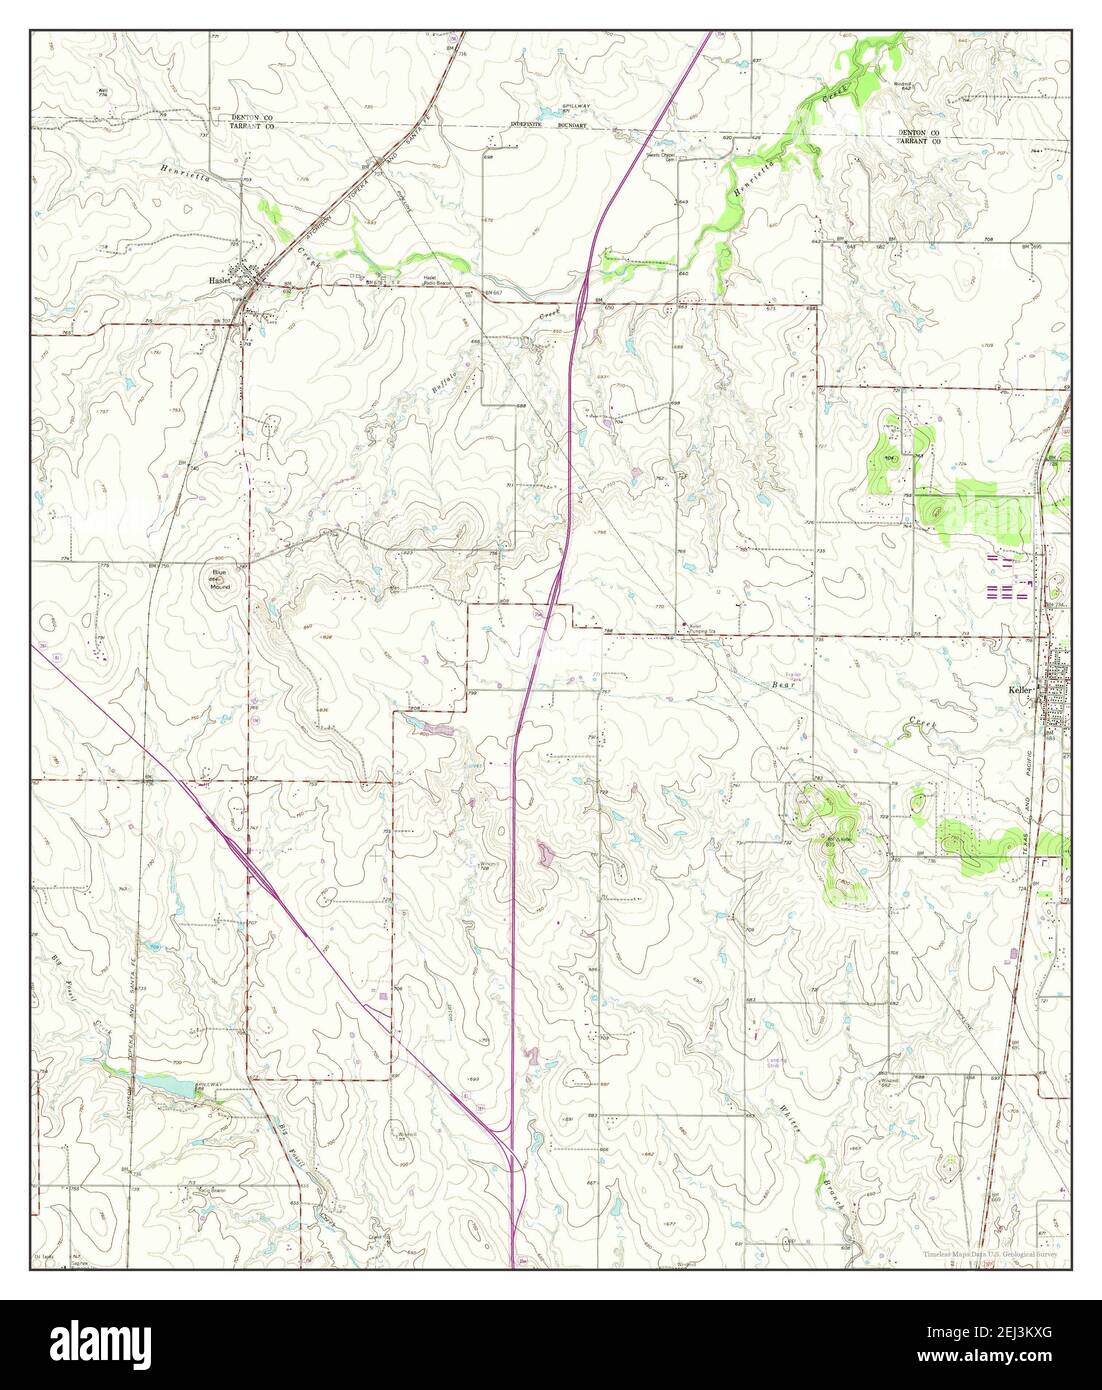 Keller, Texas, Karte 1955, 1:24000, Vereinigte Staaten von Amerika von Timeless Maps, Daten U.S. Geological Survey Stockfoto